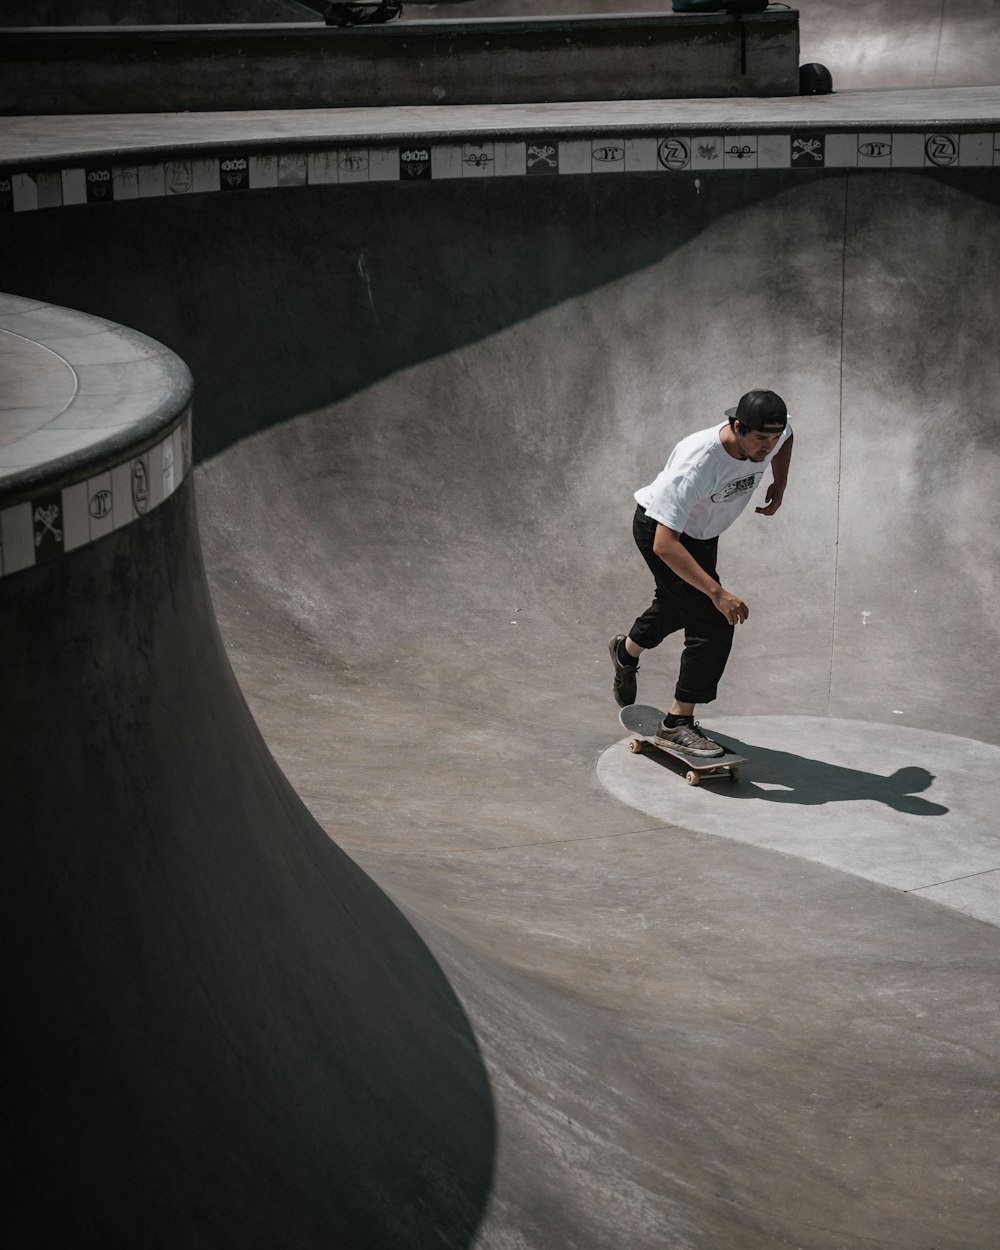 man wearing white shirt skateboarding